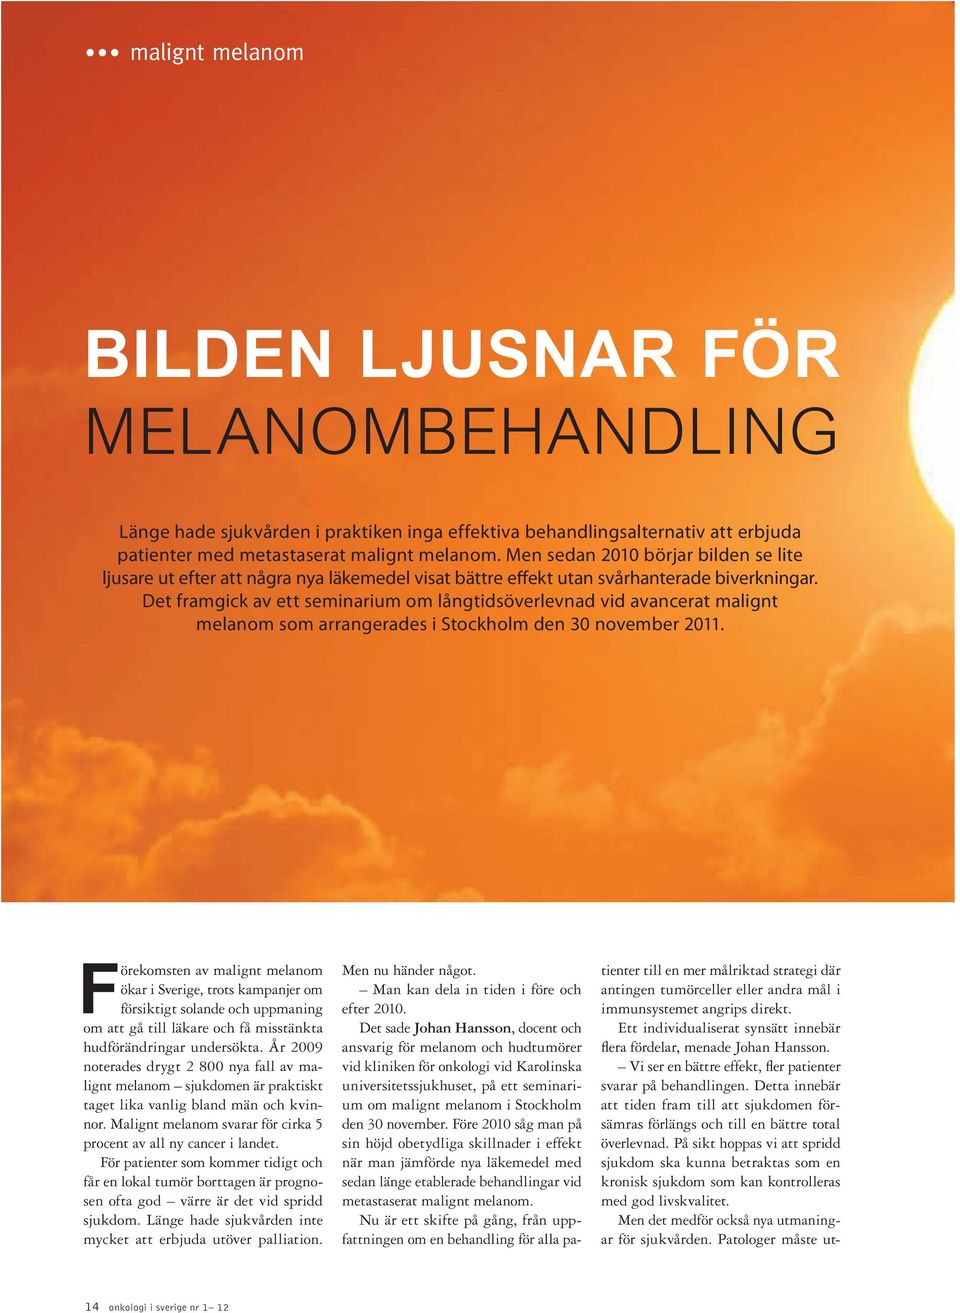 Det framgick av ett seminarium om långtidsöverlevnad vid avancerat malignt melanom som arrangerades i Stockholm den 30 november 2011.